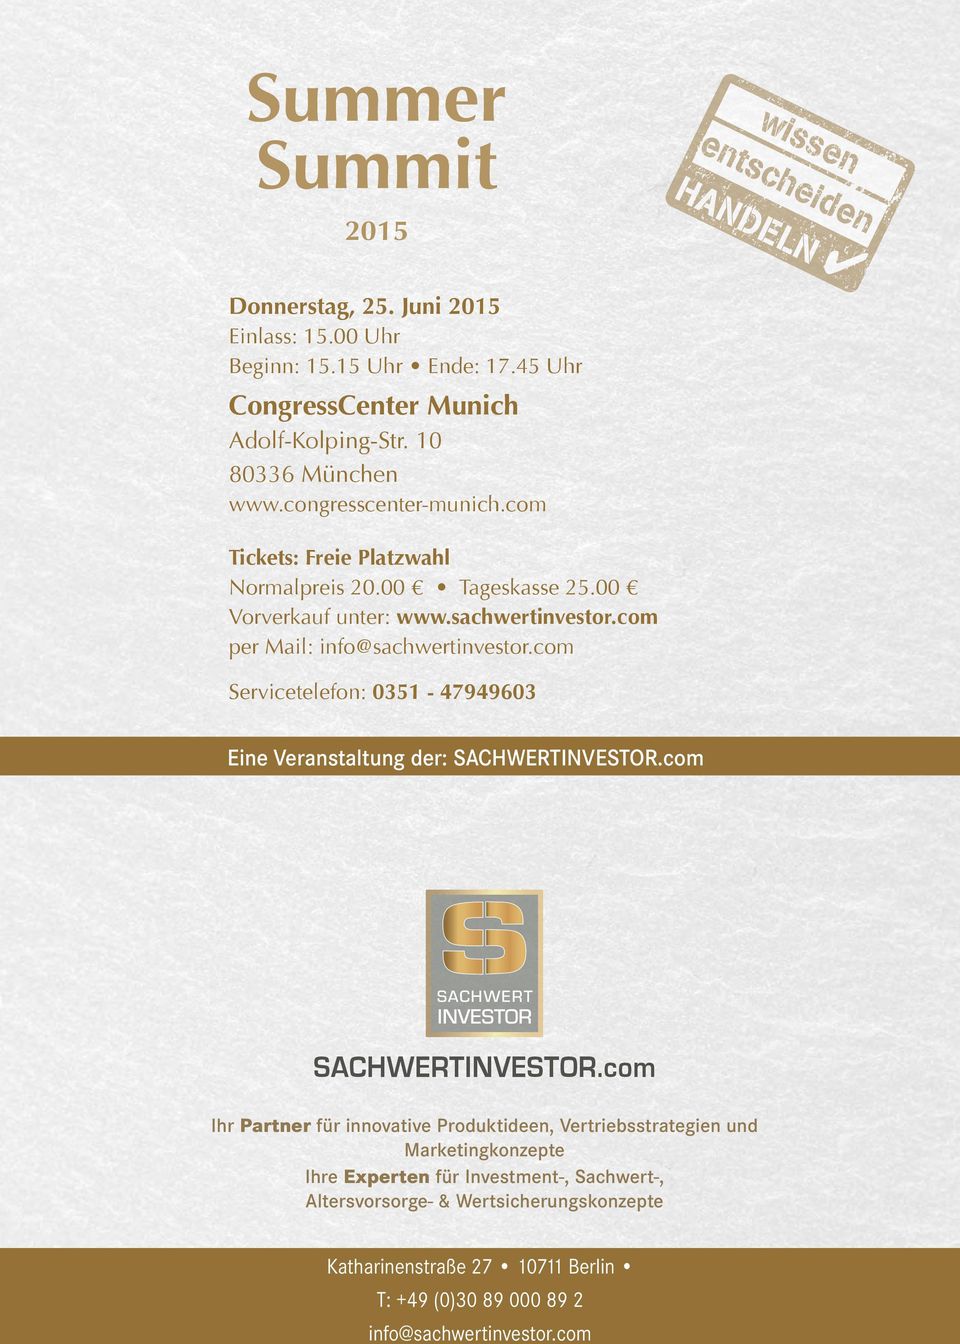 com per Mail: info@sachwertinvestor.com Servicetelefon: 0351-47949603 Eine Veranstaltung der: sachwertinvestor.com Sachwert investor SACHWERTINVESTOR.